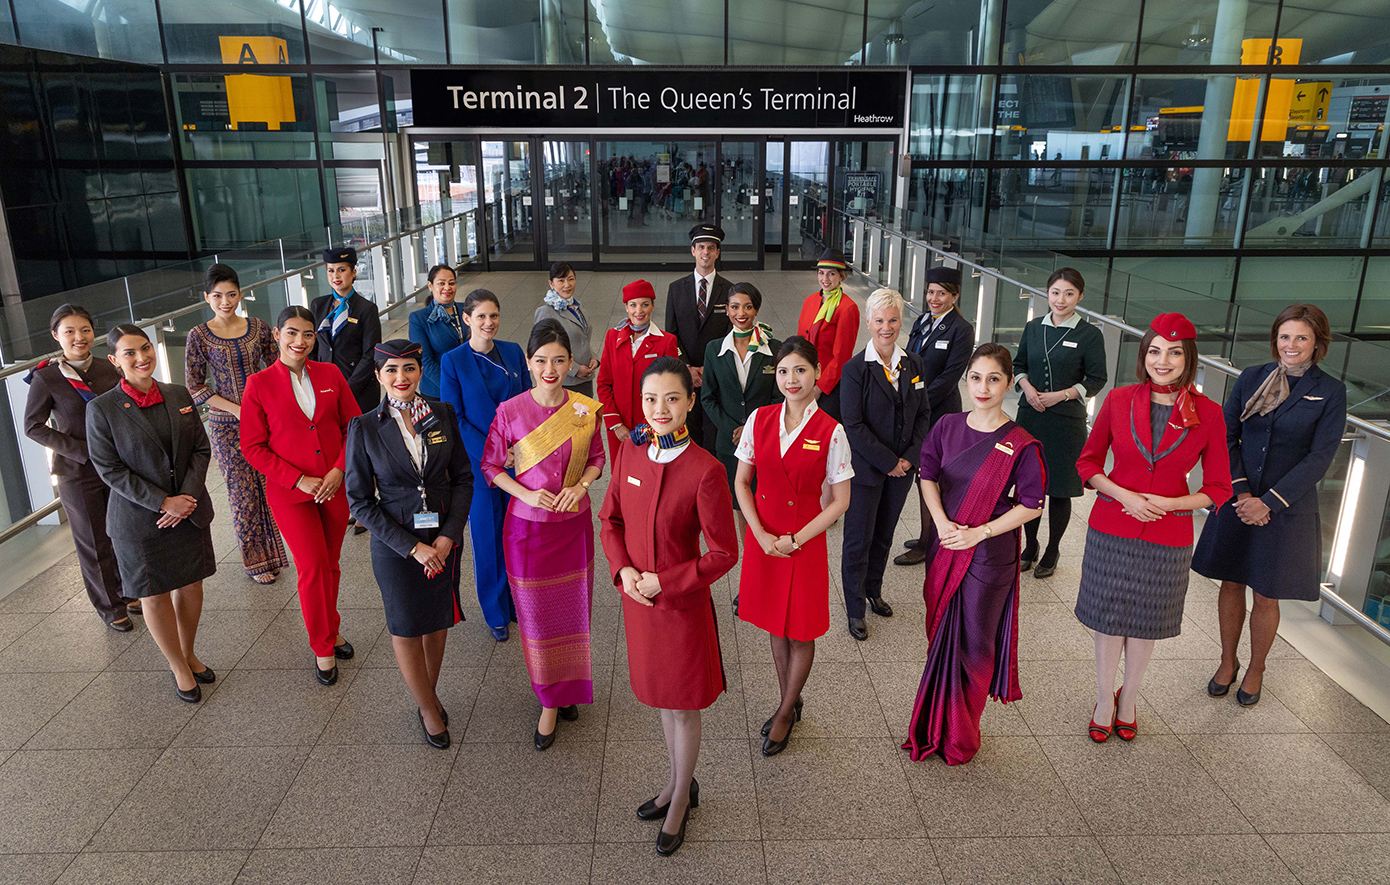 Η Star Alliance γιορτάζει 10 χρόνια παρουσίας  στο Terminal 2 του αεροδρομίου Heathrow